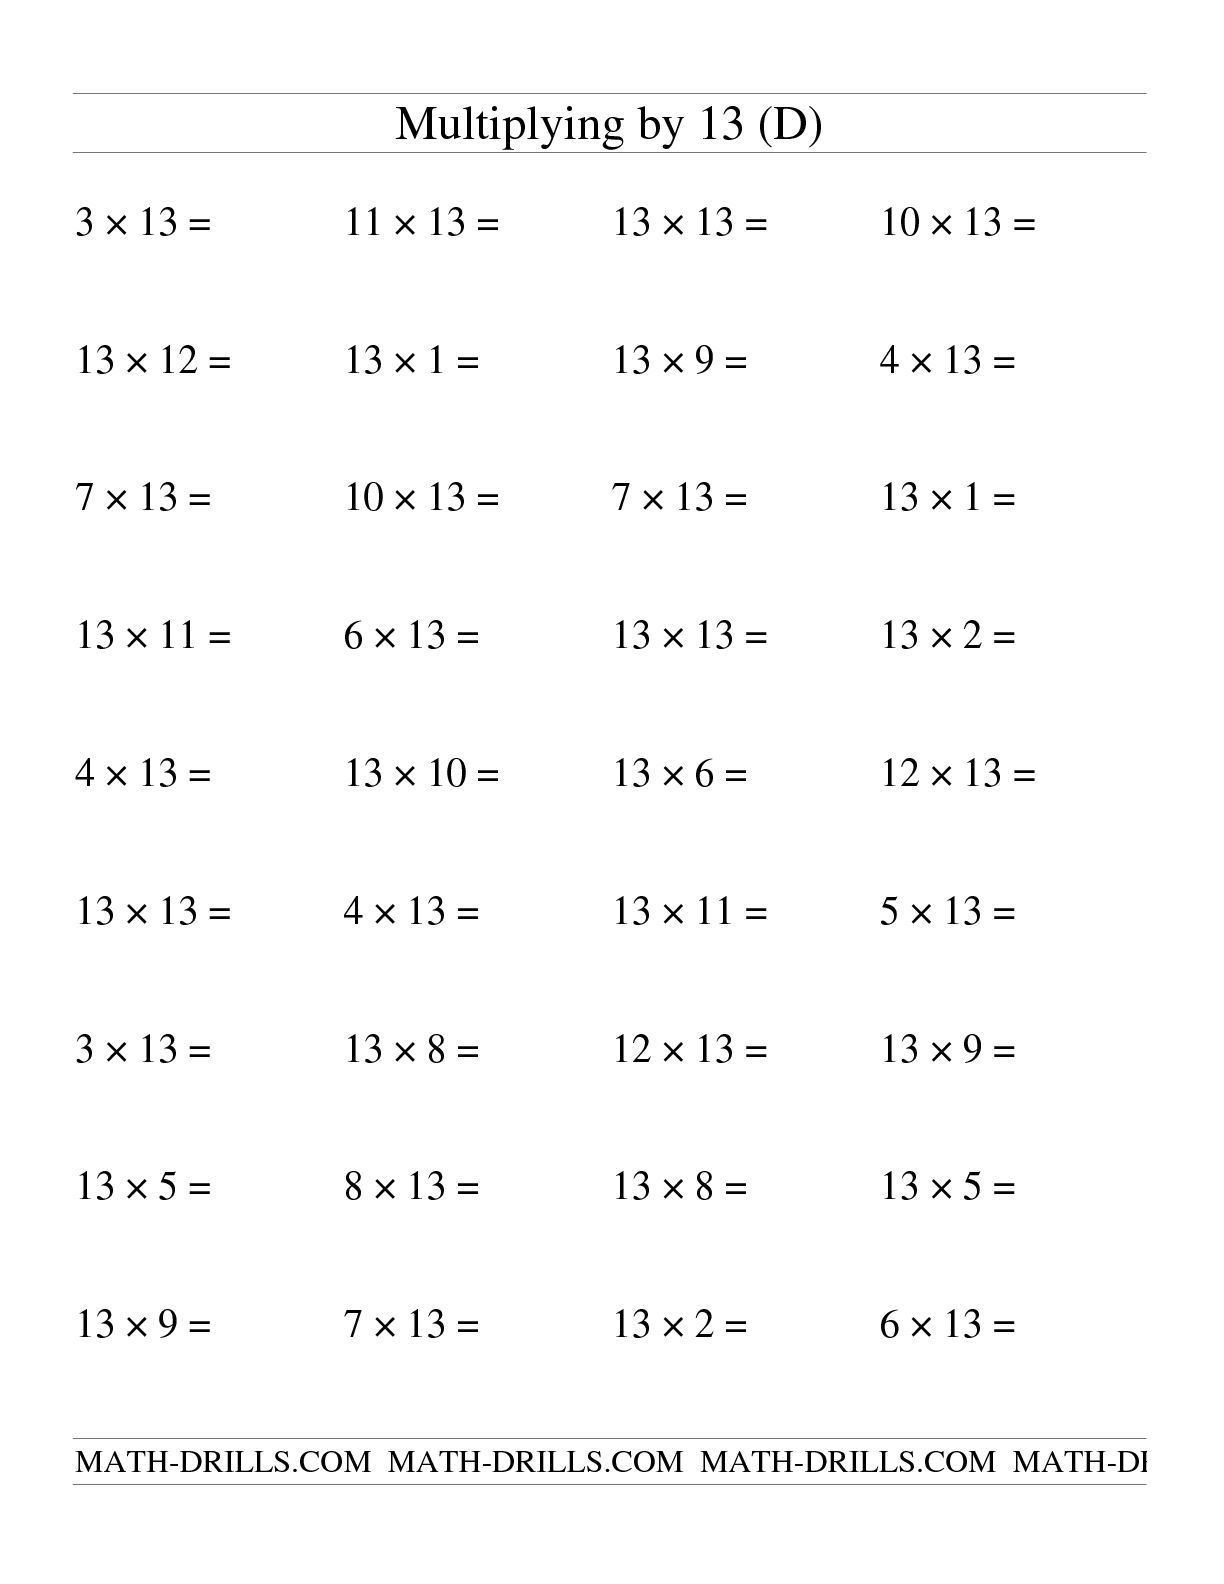 15 Best Images Of Math Worksheets Number 13 Number 13 Coloring Worksheet Preschool Worksheets